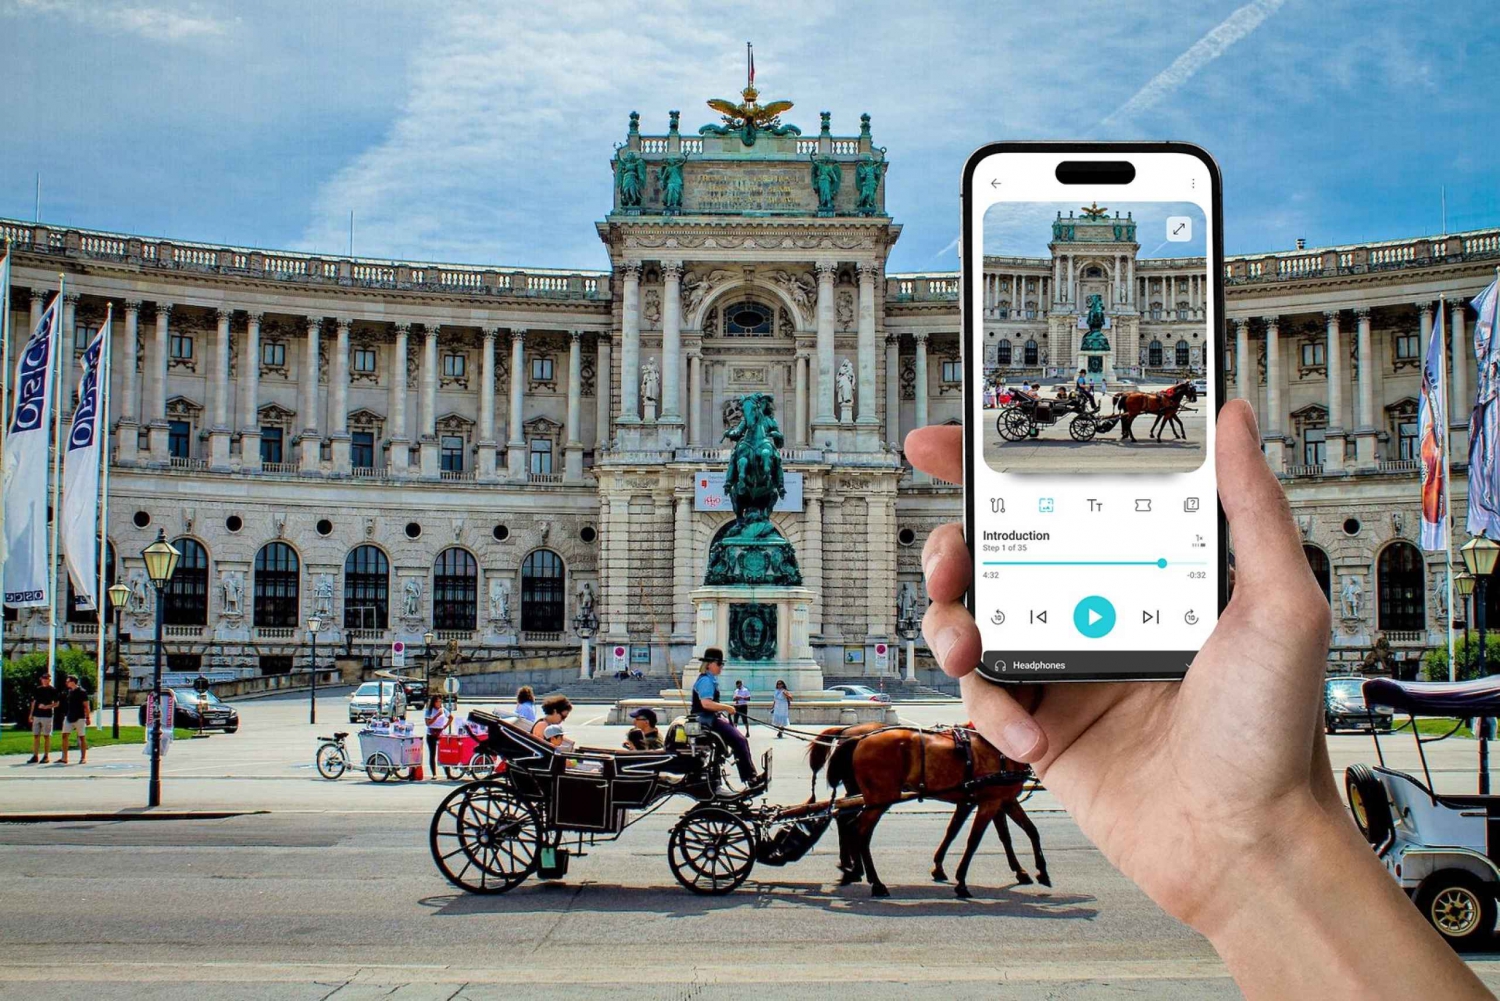 Wien: Rundvandring i Hofburgpalatset In-App Audio Tour (EN)